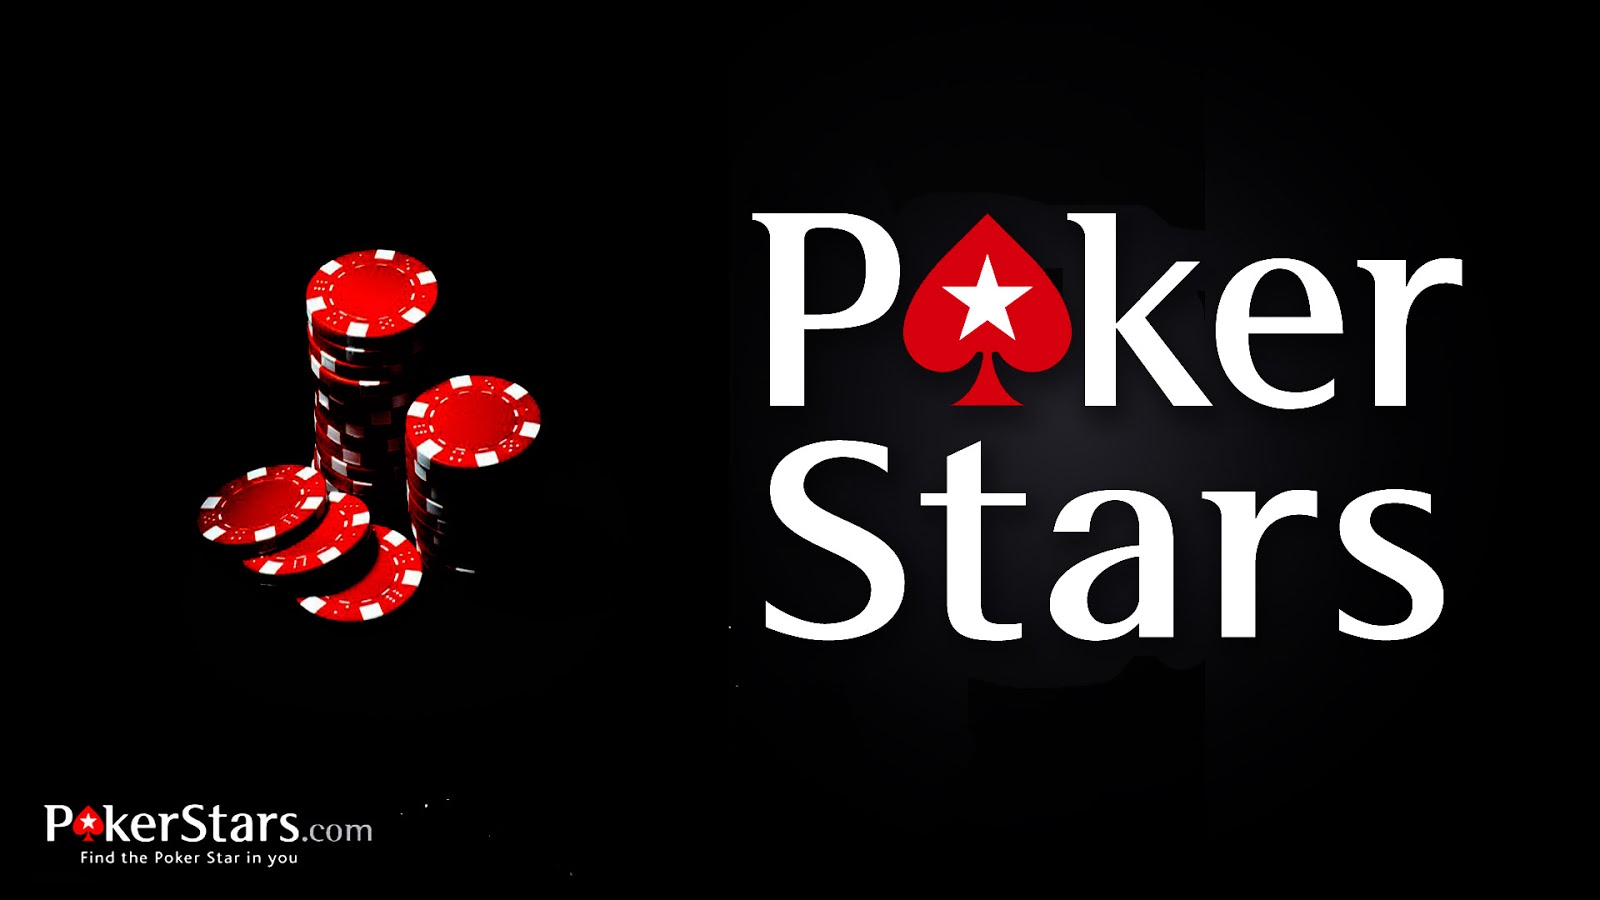 Pokerstars Wallpaper Poker Stars And